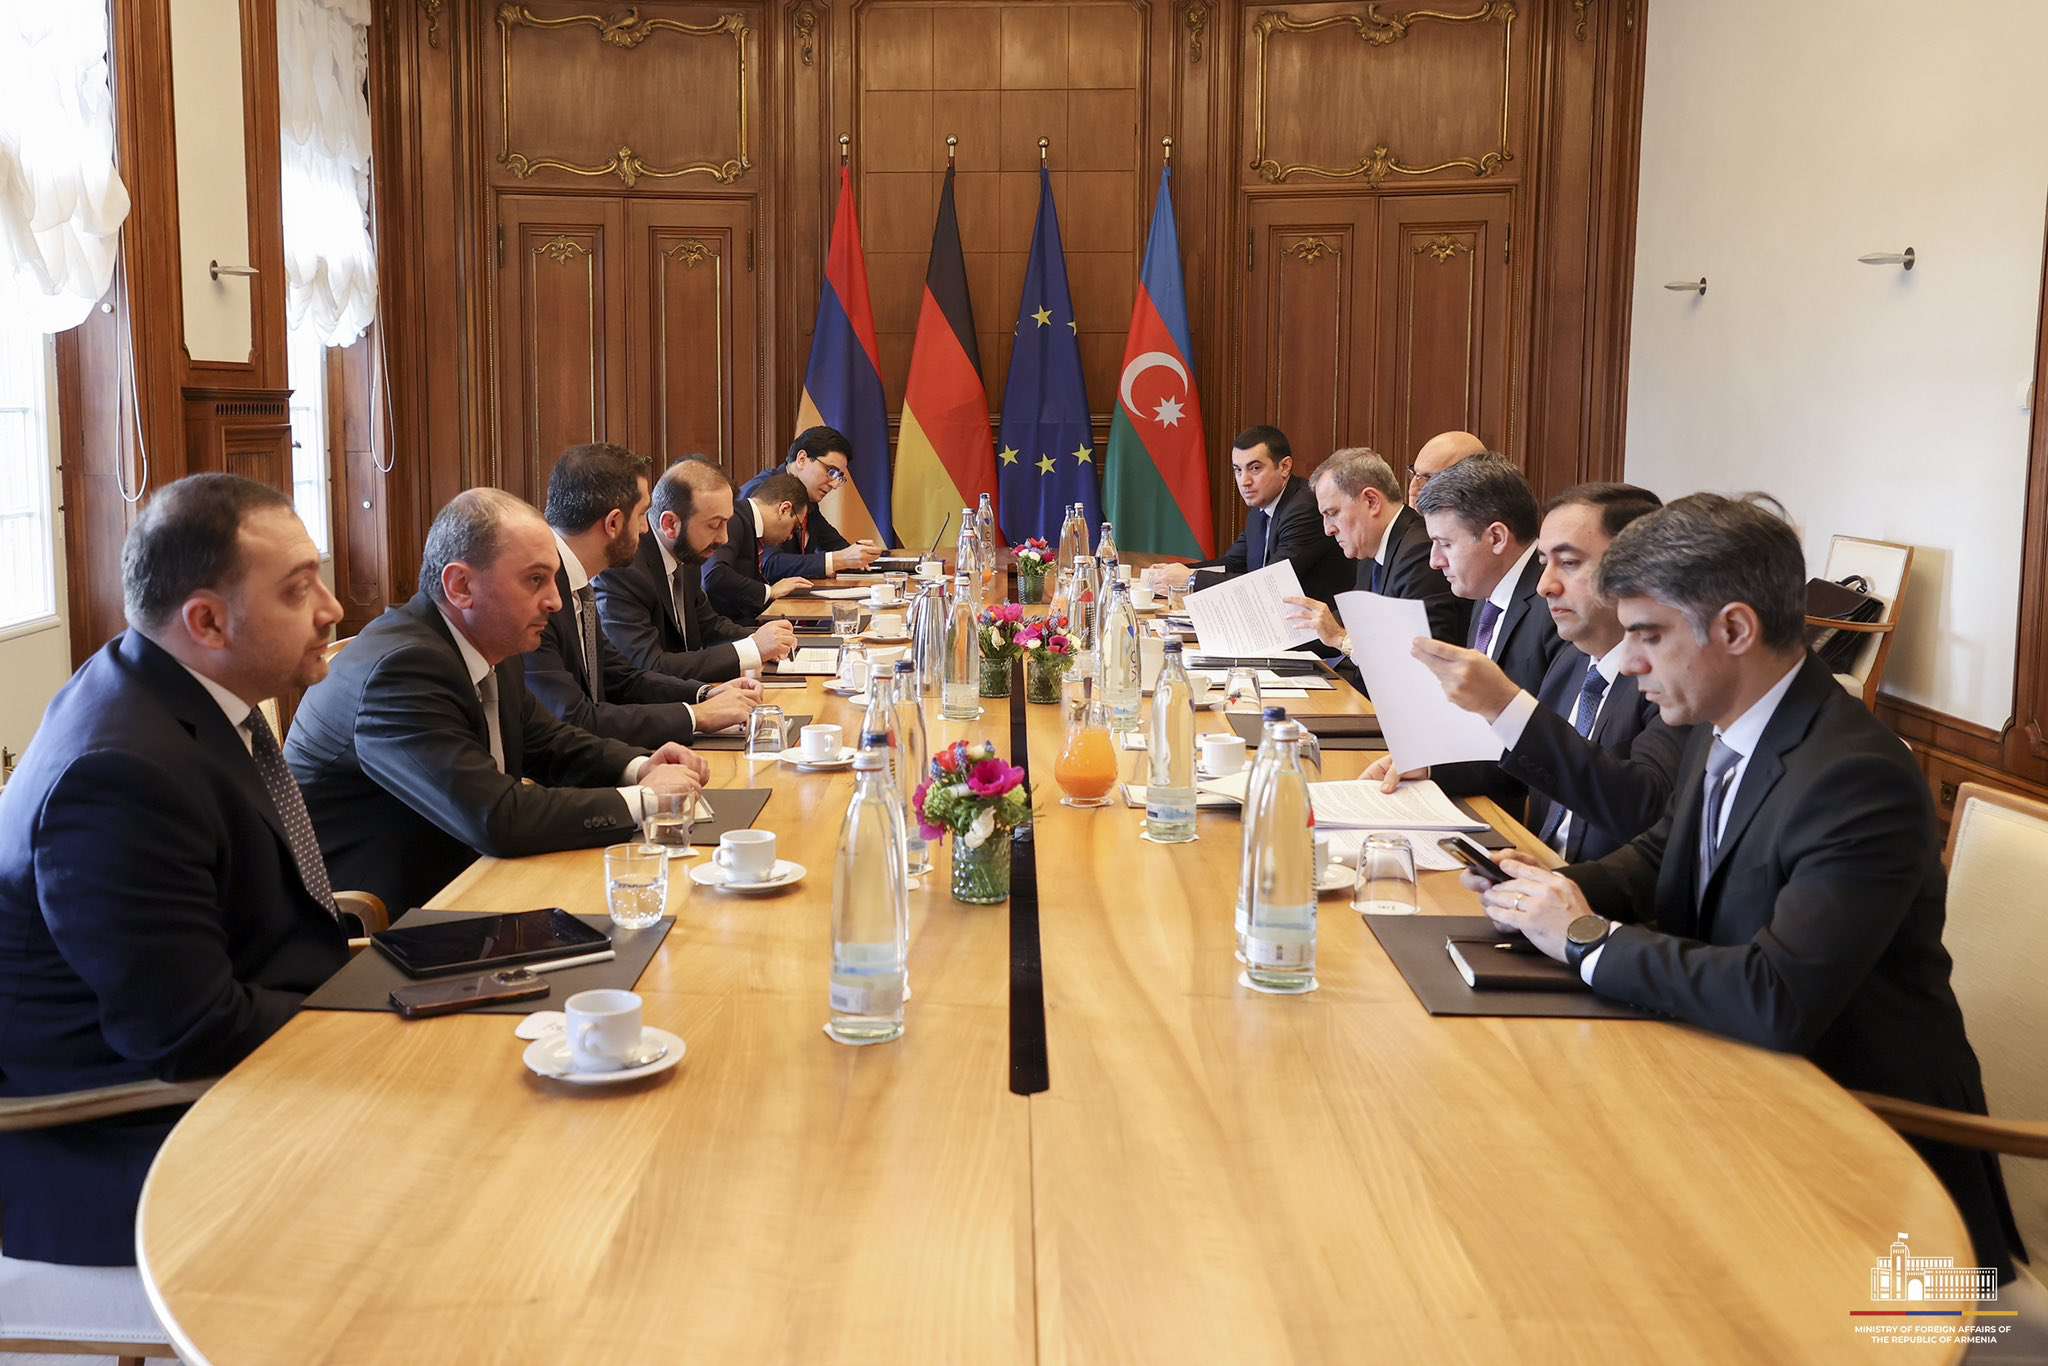 Üçlü toplantının ardından Ermenistan ve Azerbaycan dışişleri bakanlarının görüşmeleri gerçekleşti